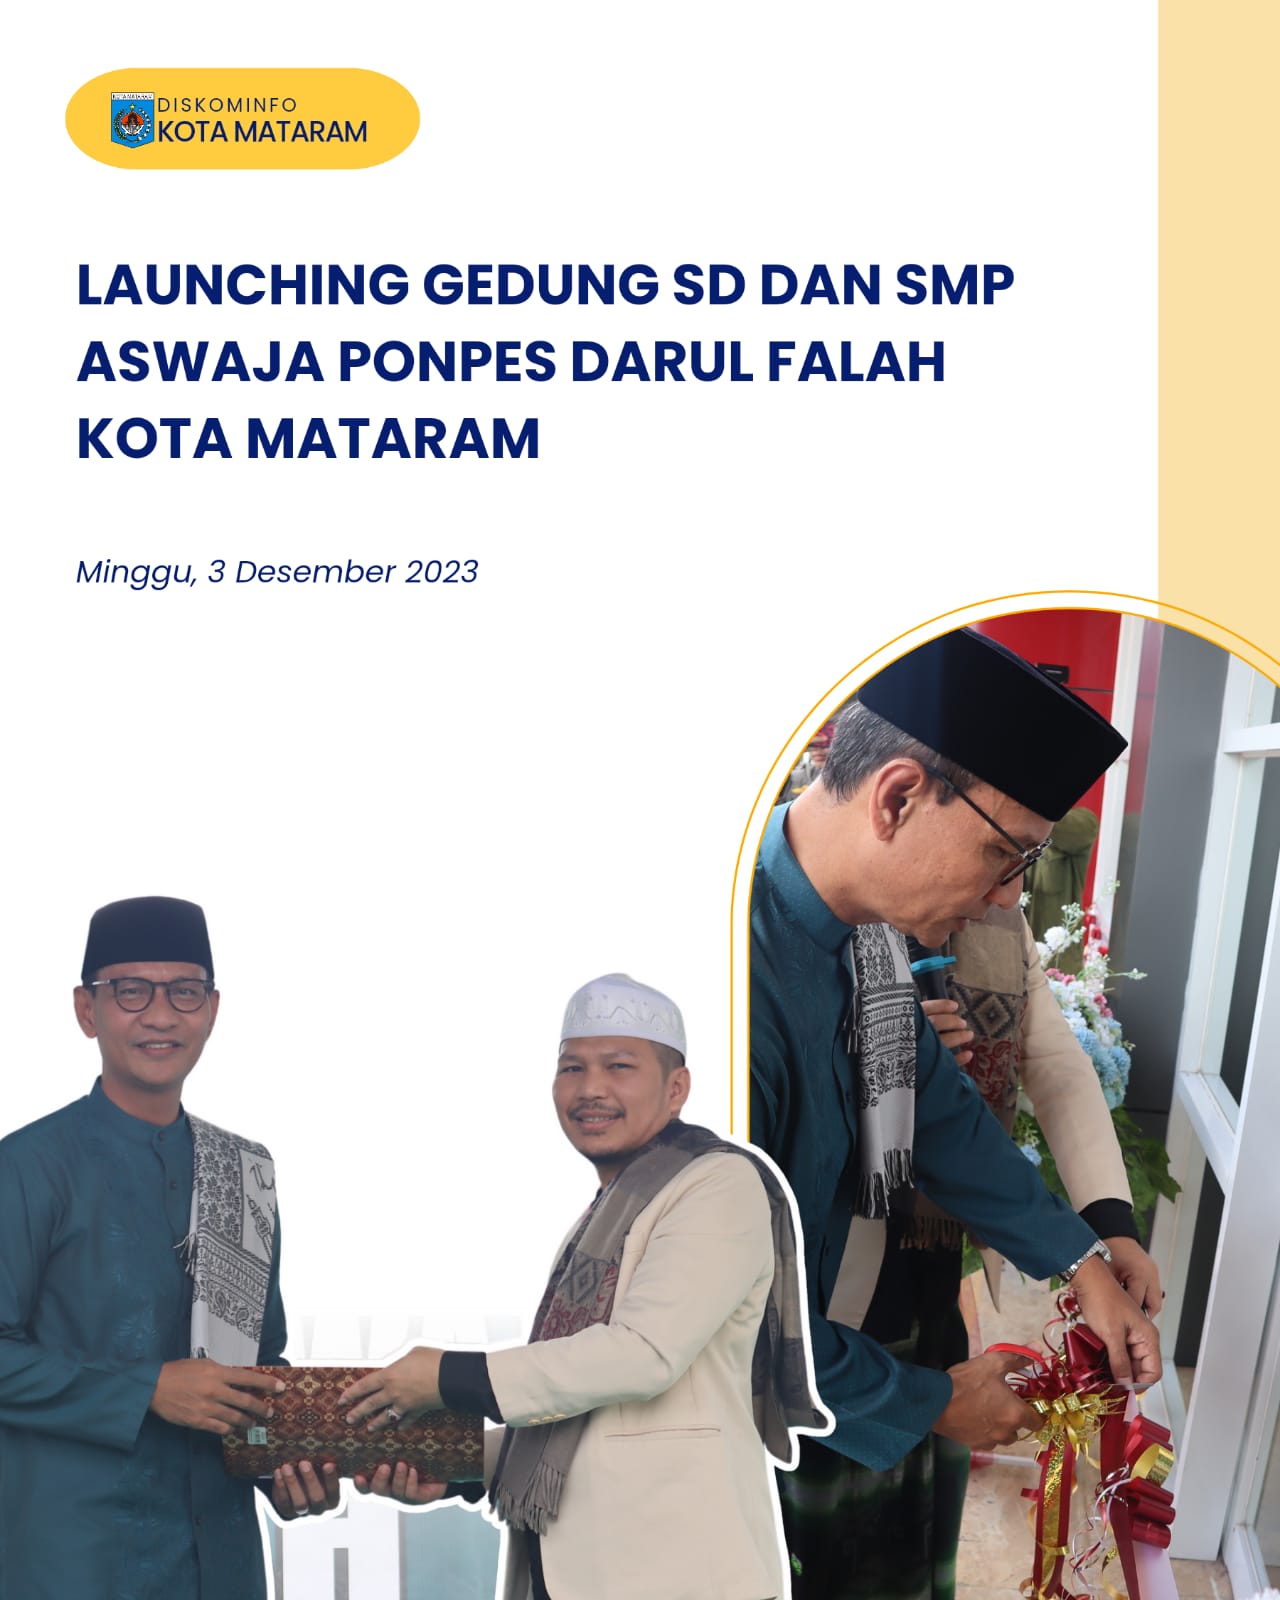 Launching Gedung SD dan SMP Ponpes Darul Falah Kota Mataram